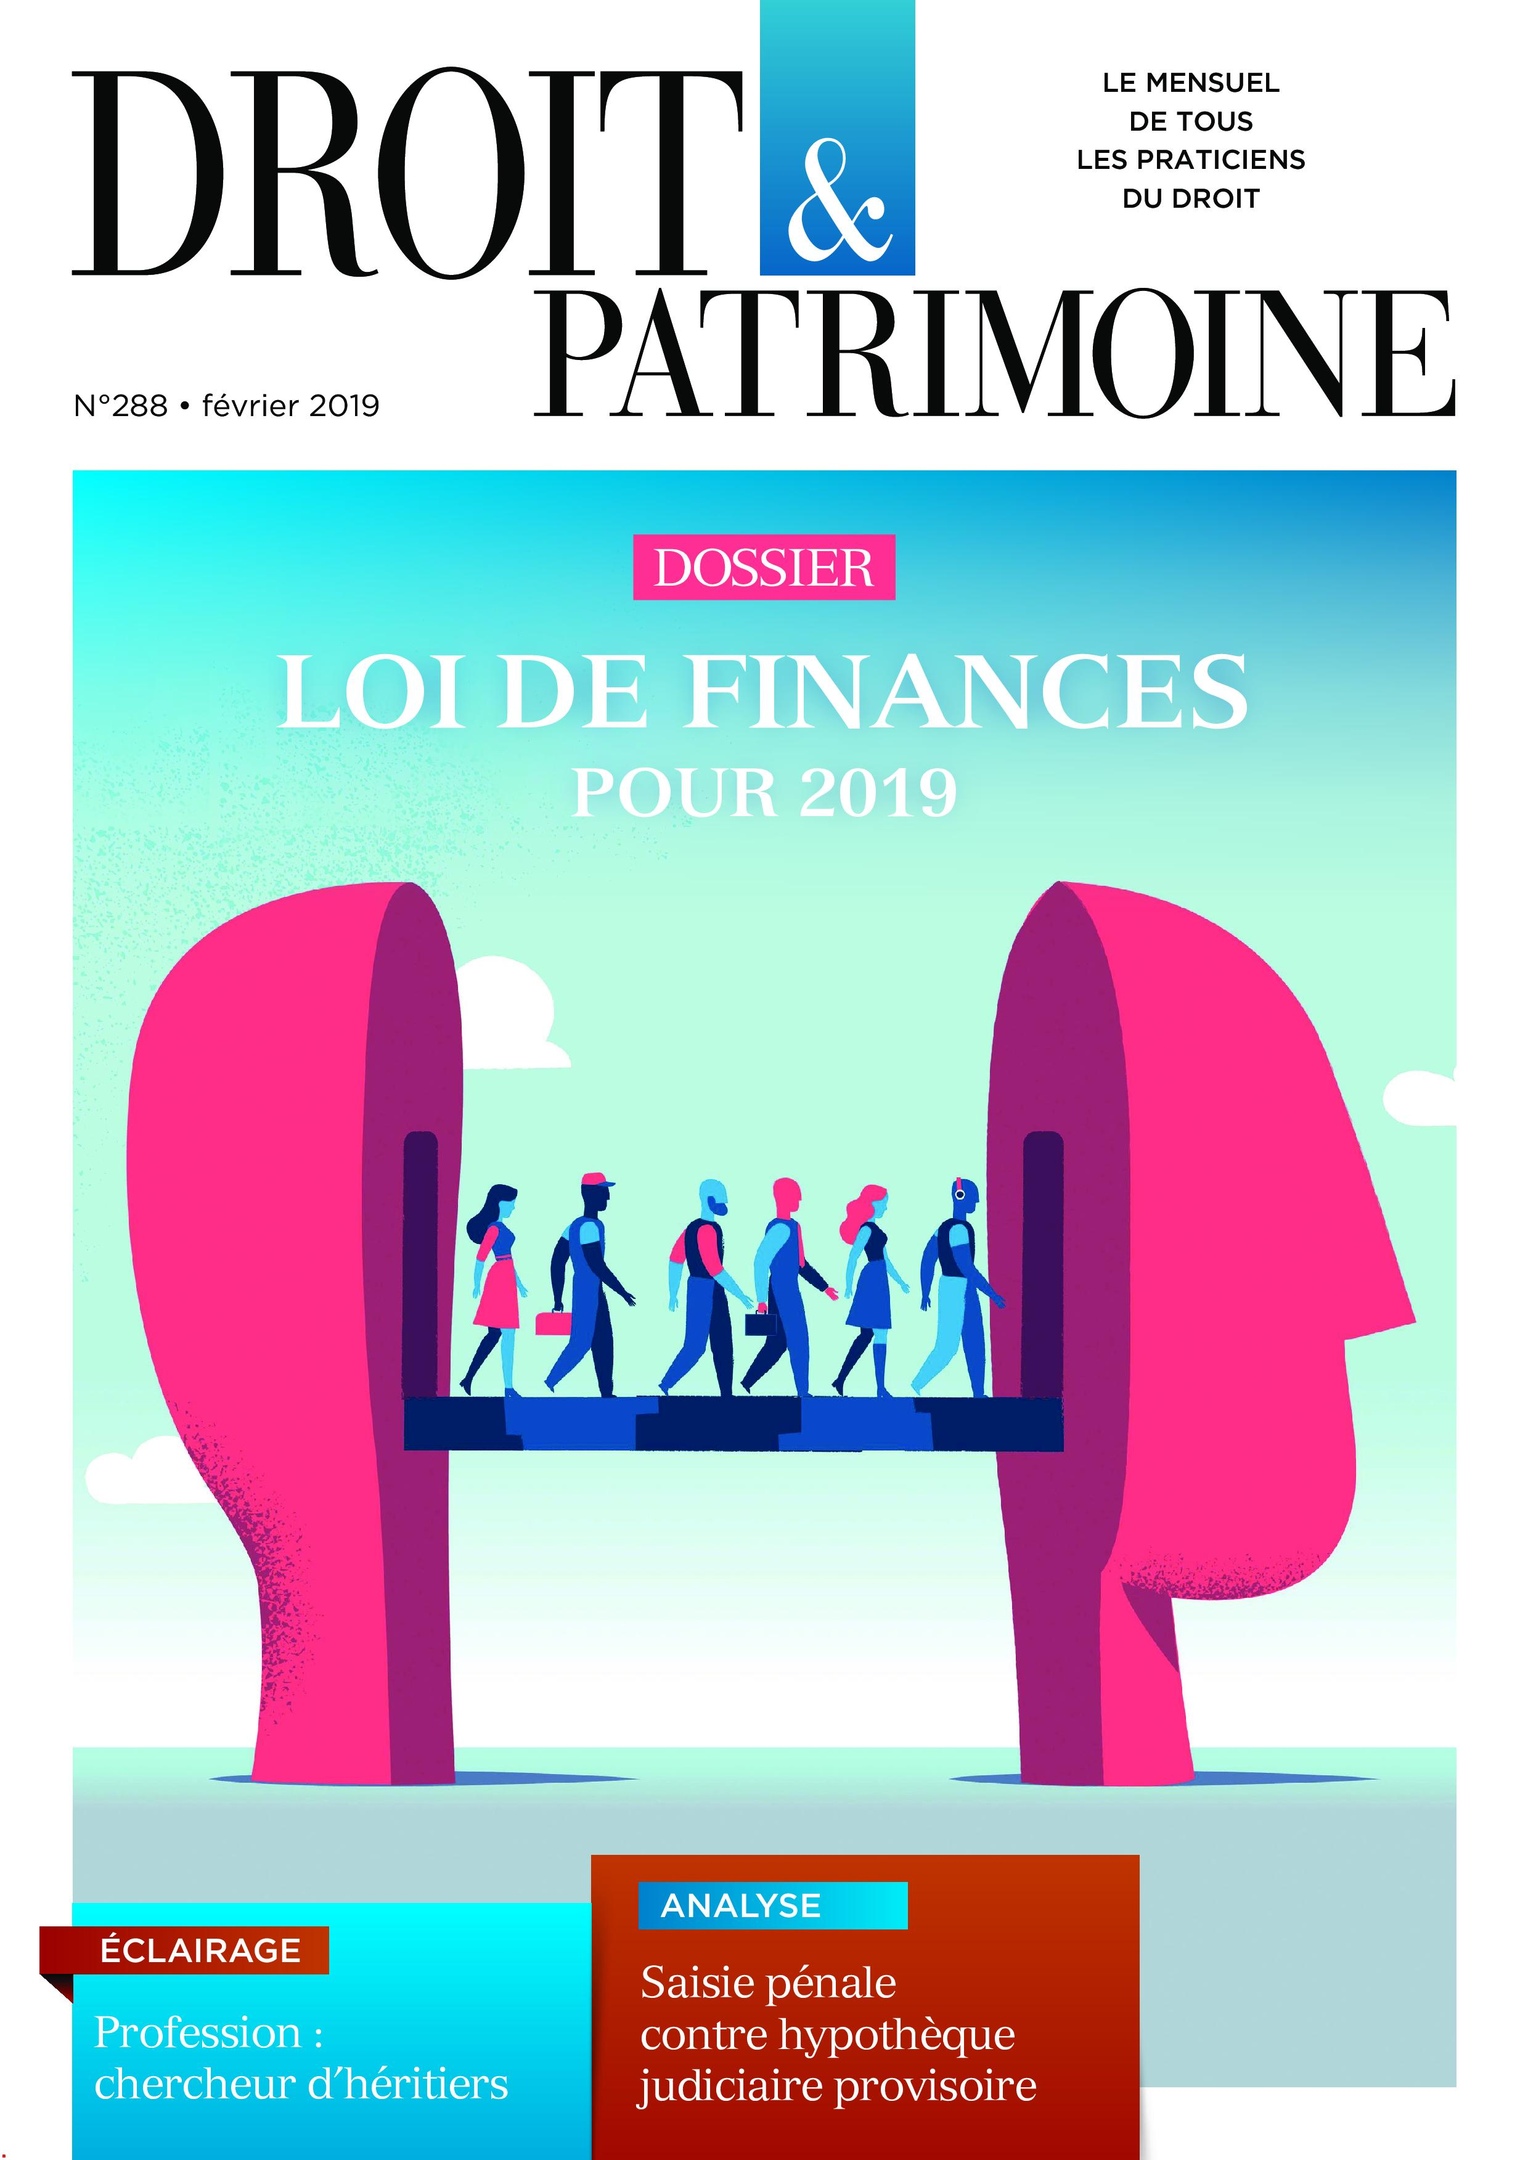 Droit & Patrimoine – 01 Février 2019